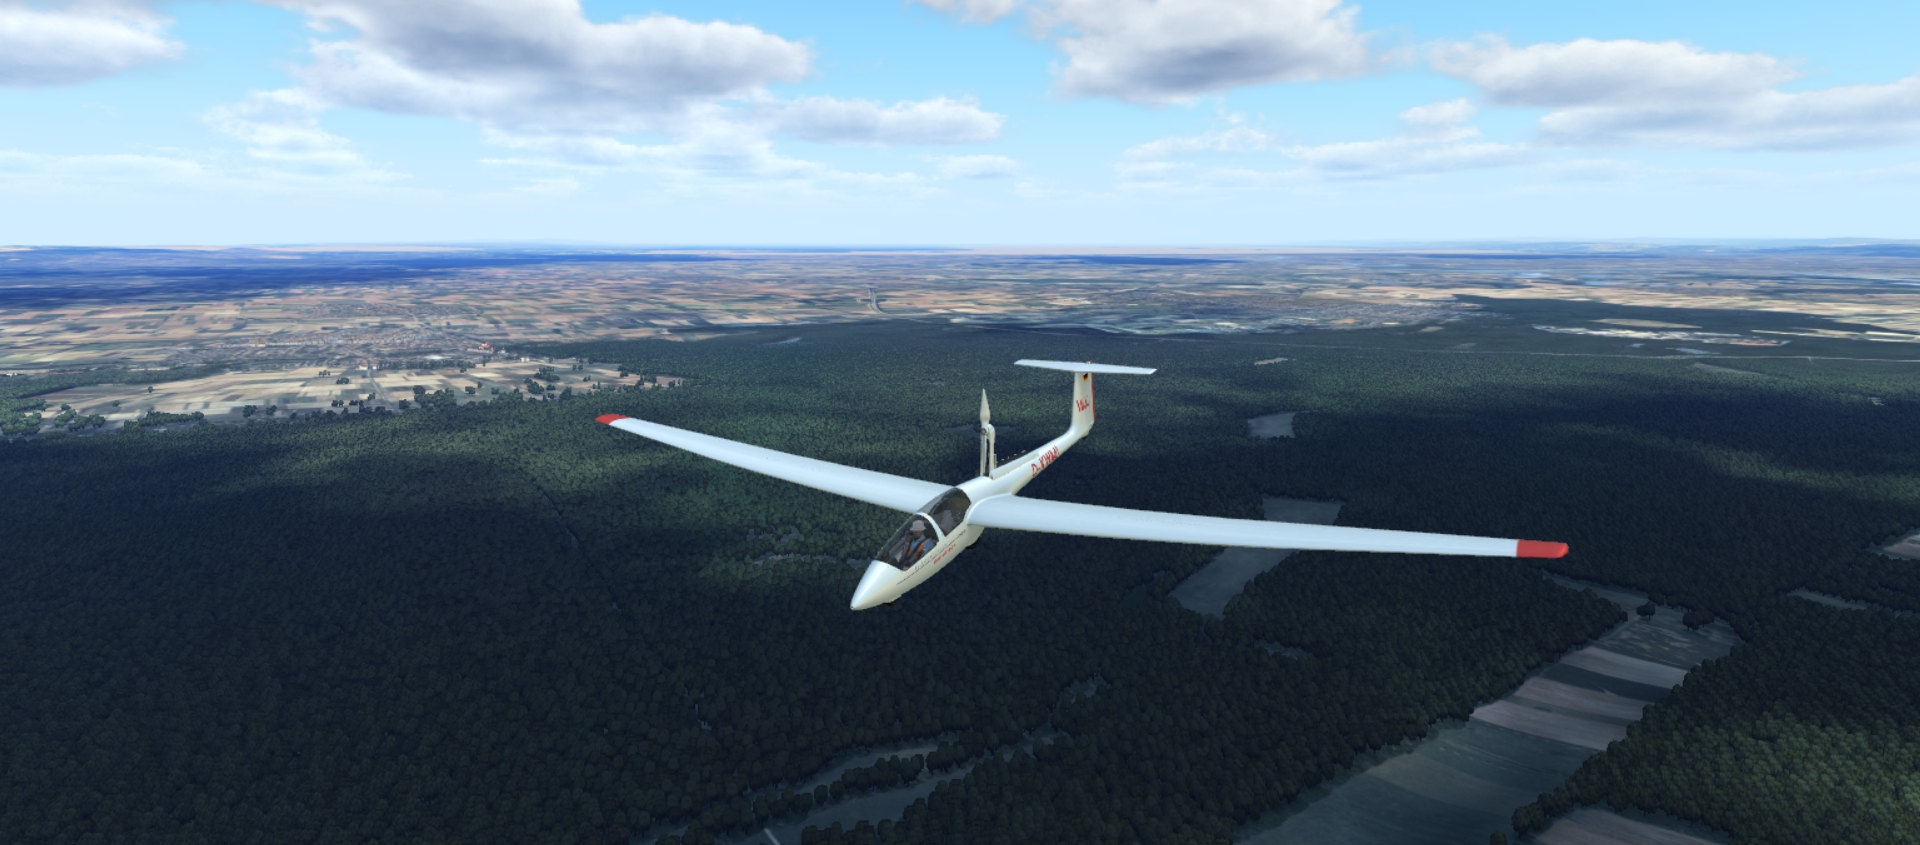 Antriebslos, durch die Luft: Neue Infos zum Glider Simulator!